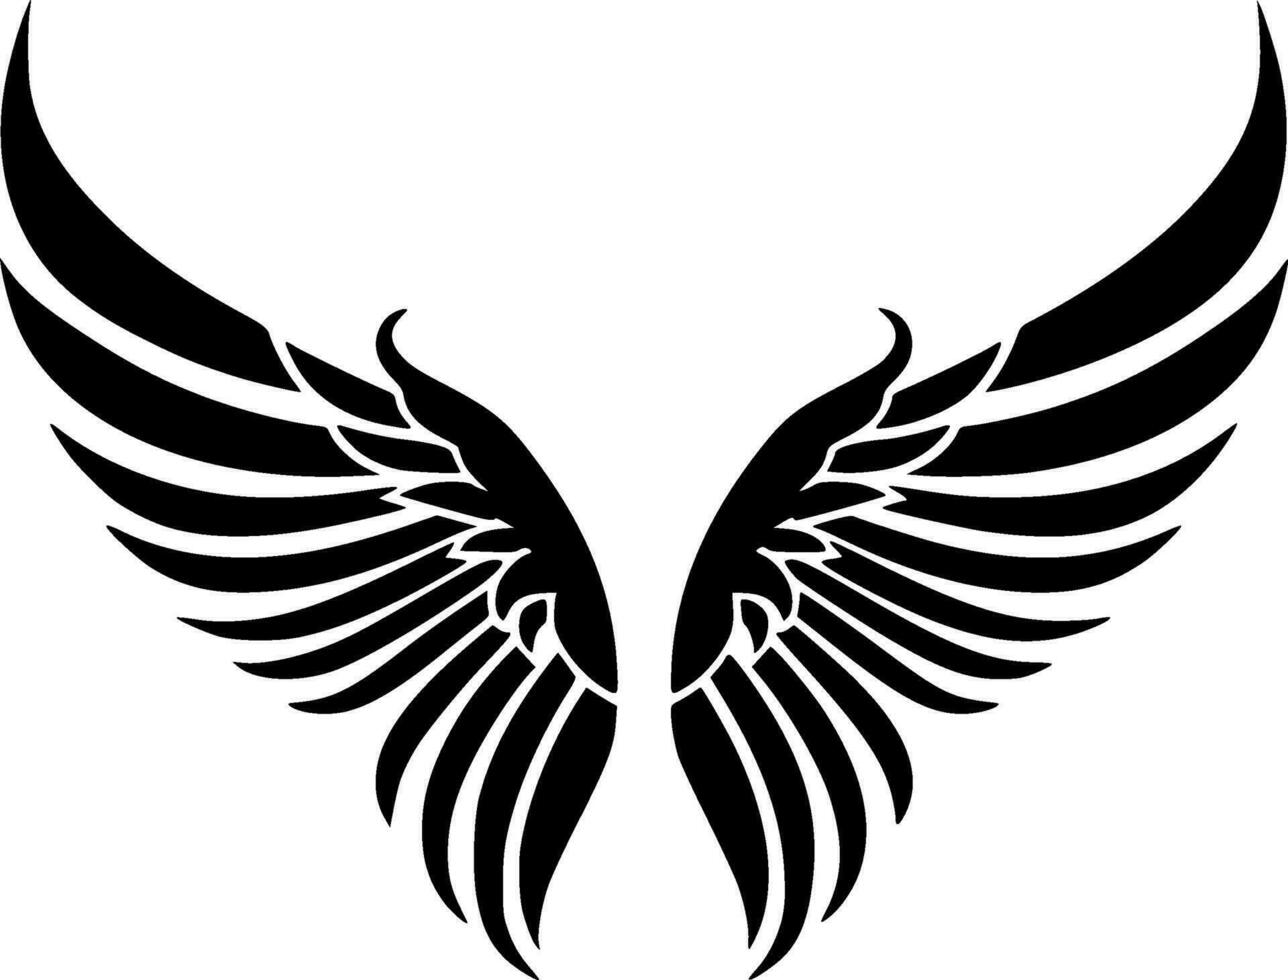 ángel alas - negro y blanco aislado icono - vector ilustración